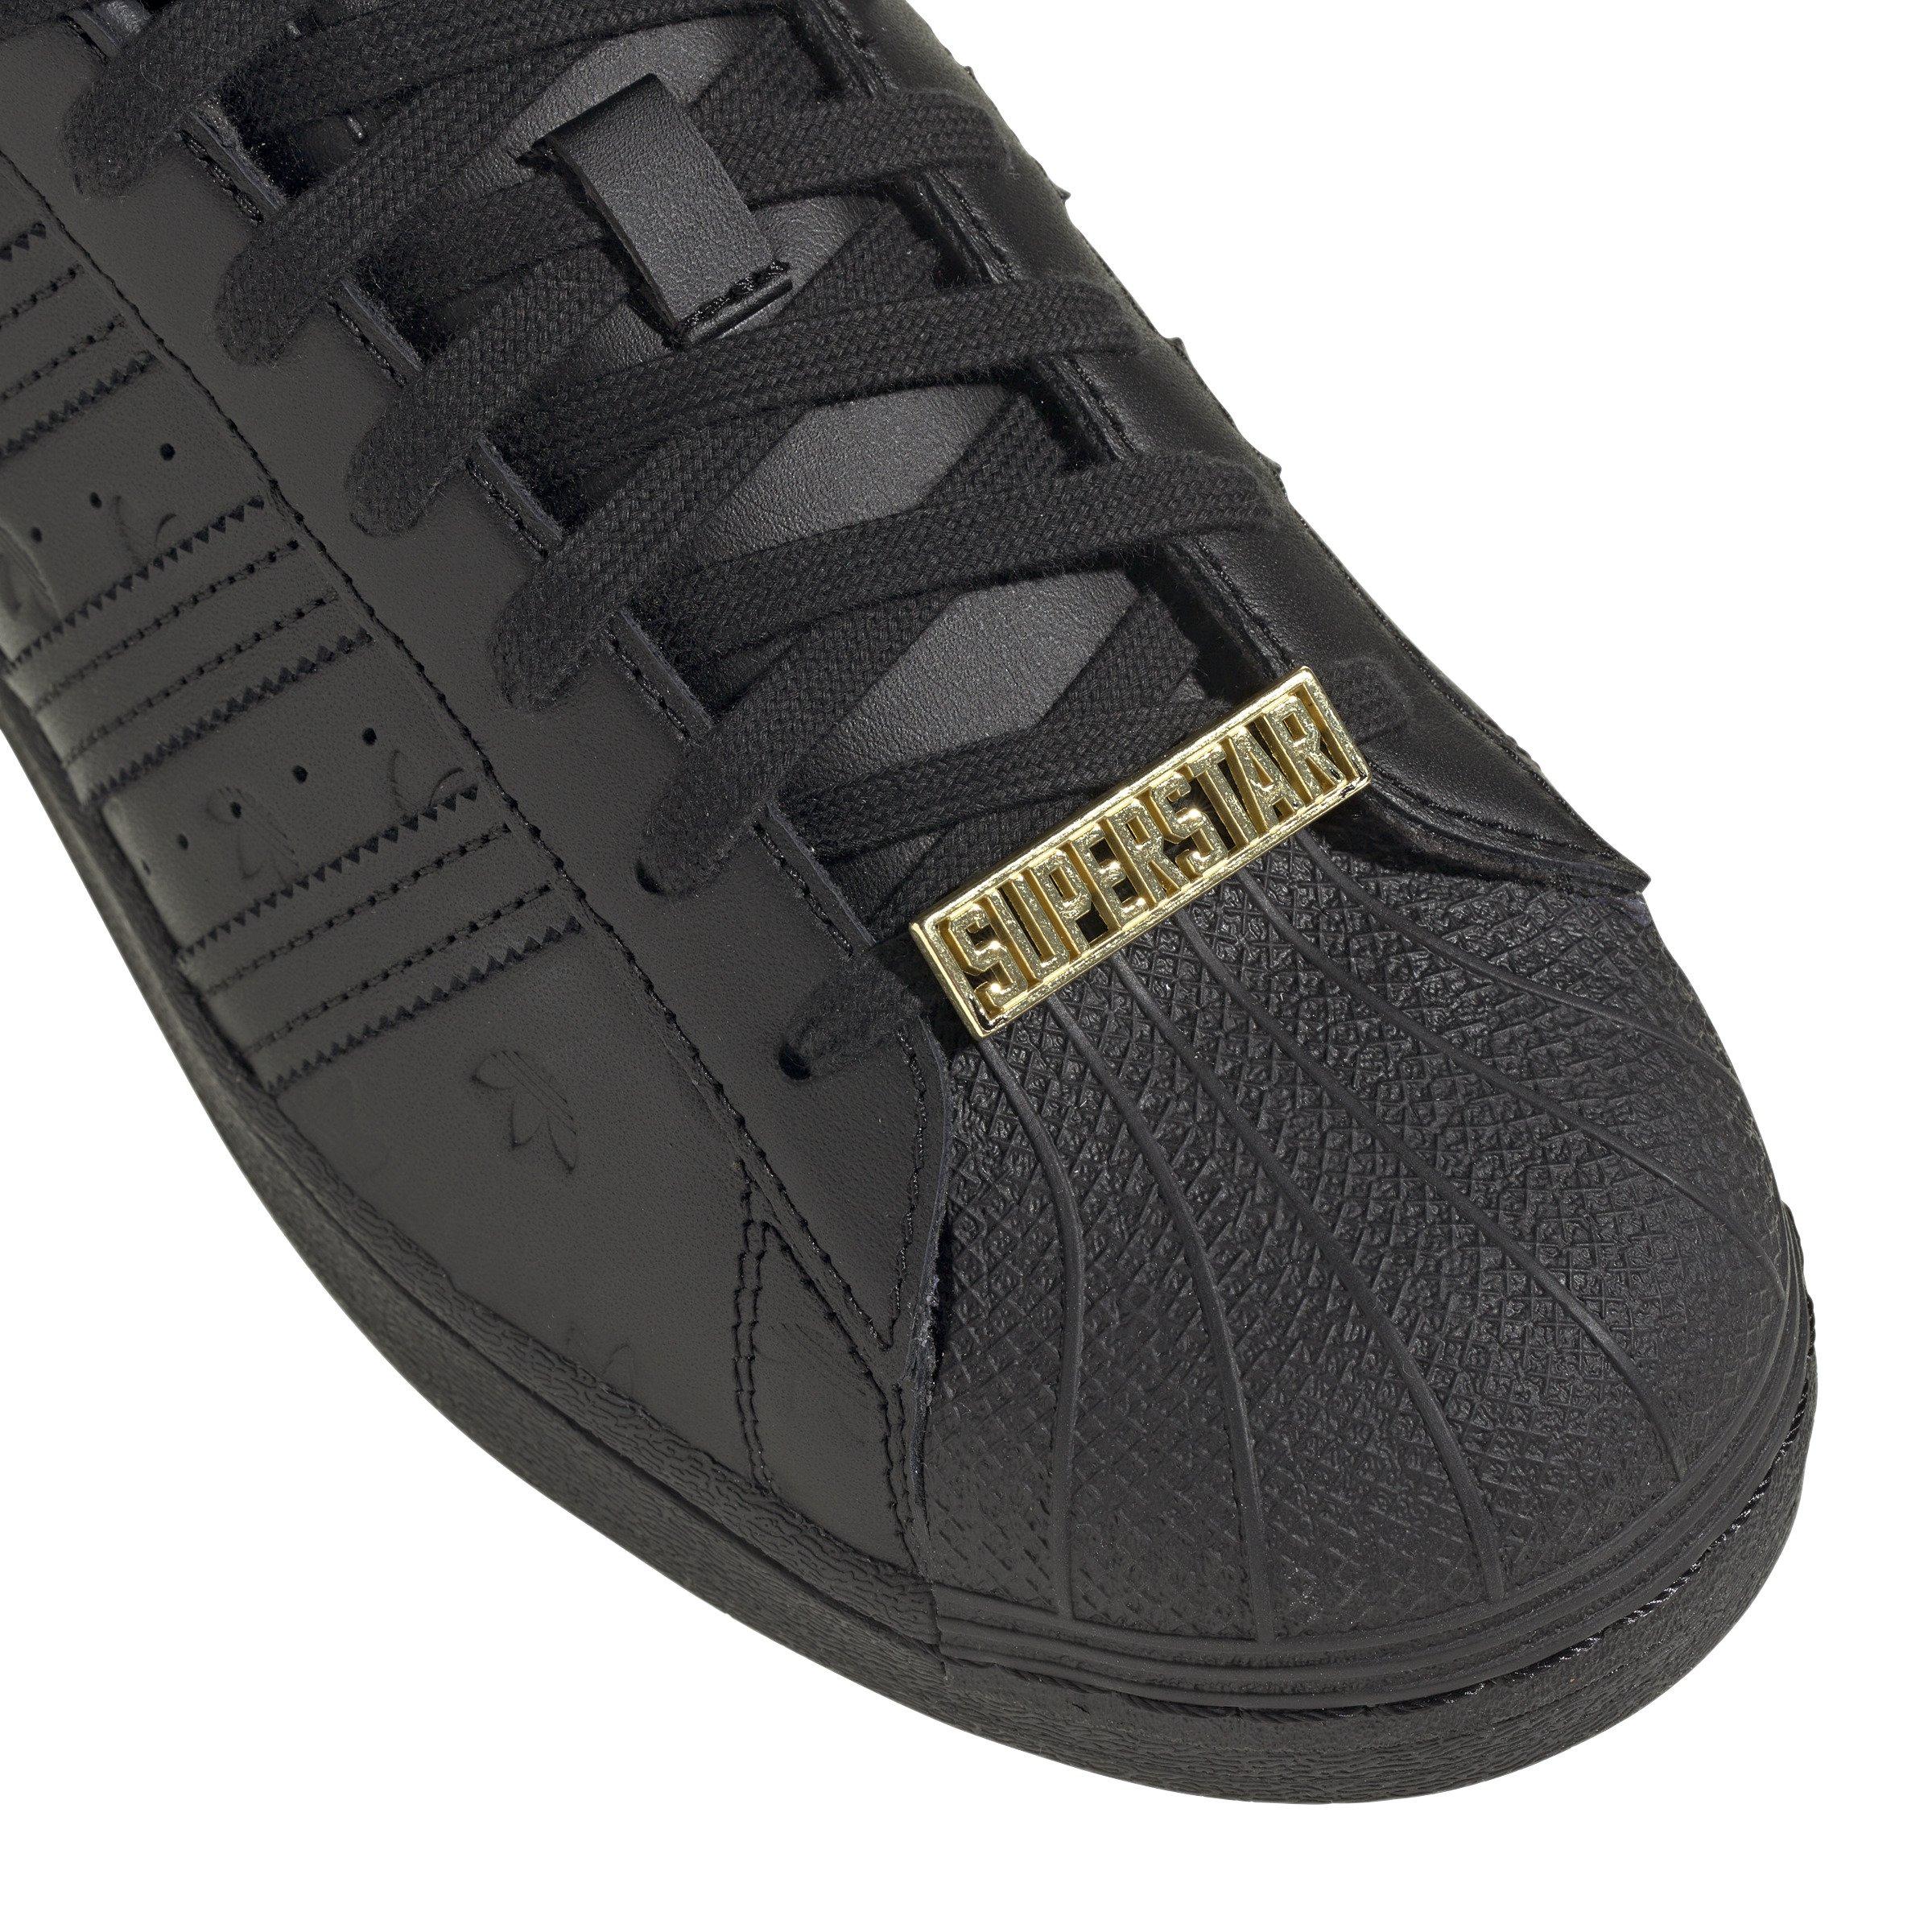 Superstar "Core Black/Core Black/Carbon" School Shoe